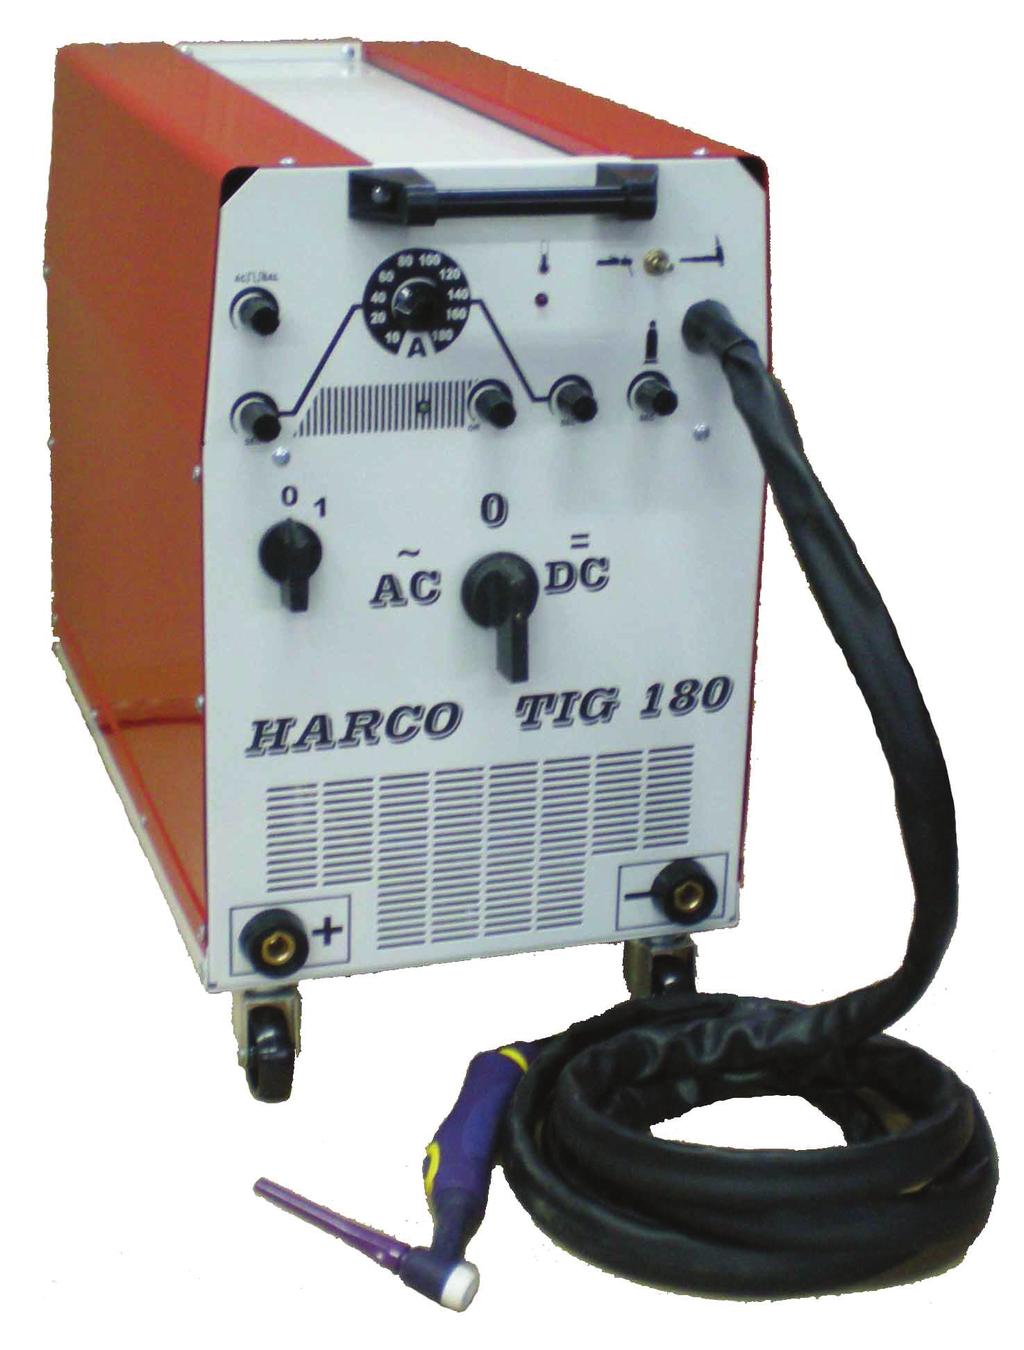 ИНСТРУКЦИЯ ЗА ЕКСПЛОАТАЦИЯ Апарат за ВИГ заваряване HARCO TIG 80A AC/DC Съдържание Описание, Захранване и започване на работа... Принцип на действие и настройки, Сглобяване на ВИГ горелка.